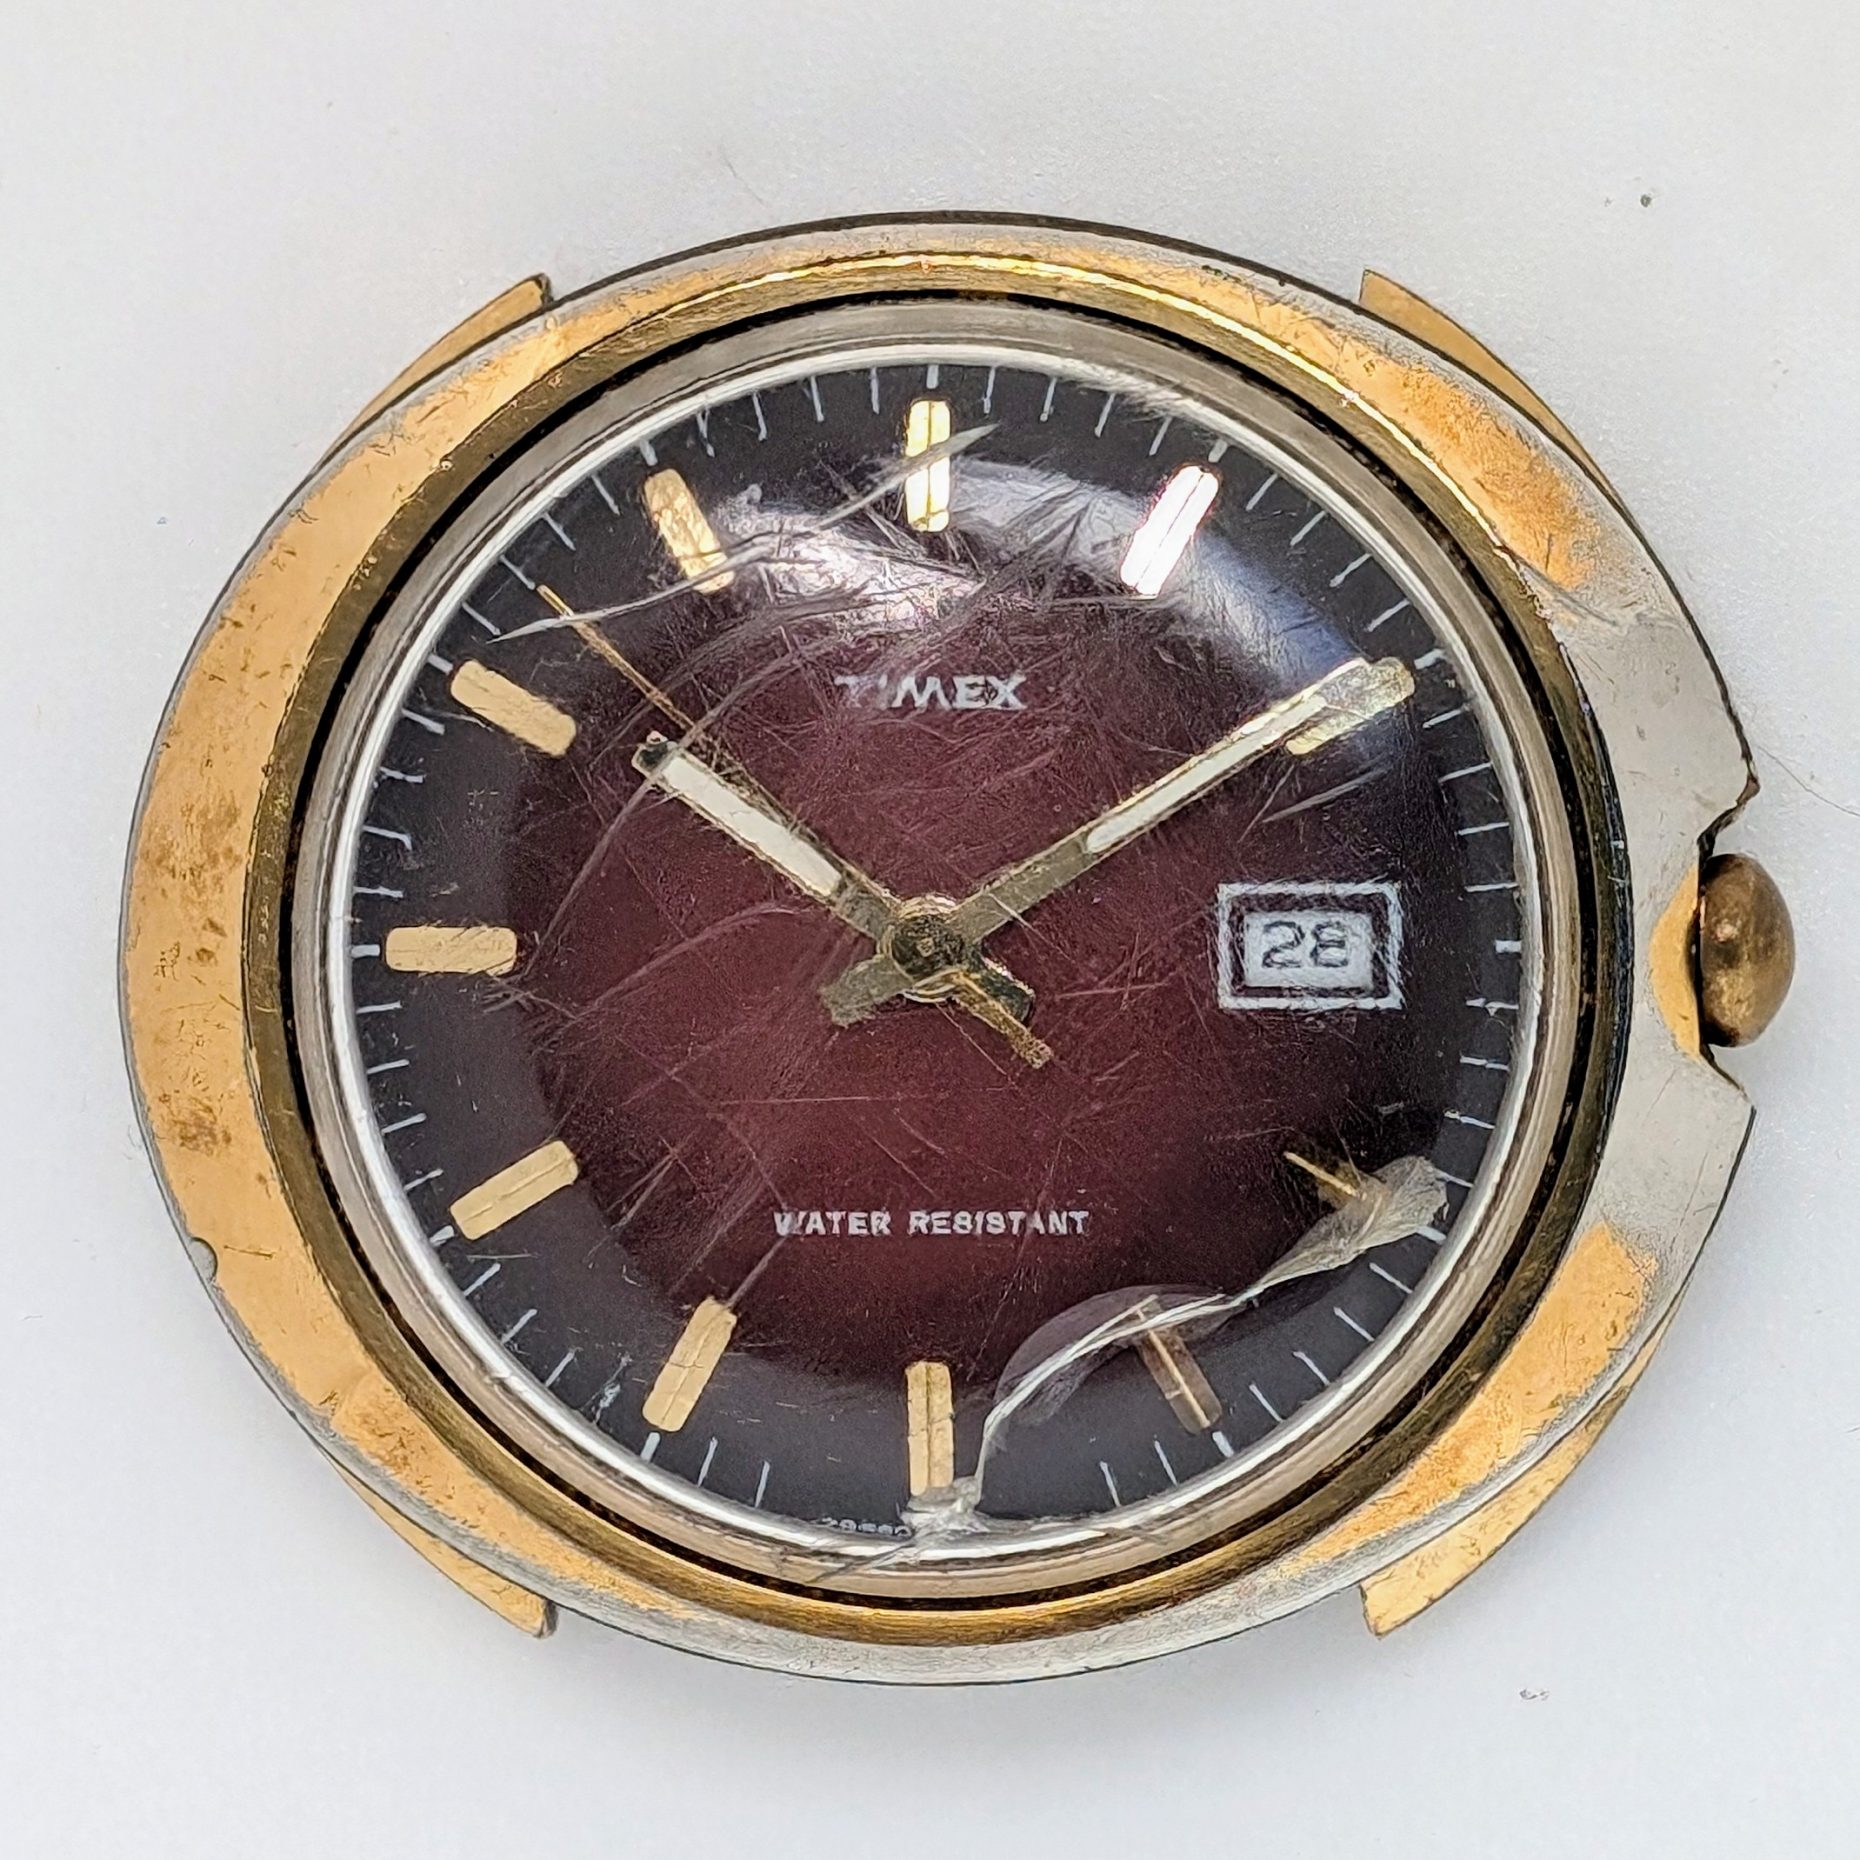 Timex Marlin Calendar 1974 Ref. 28560 02574